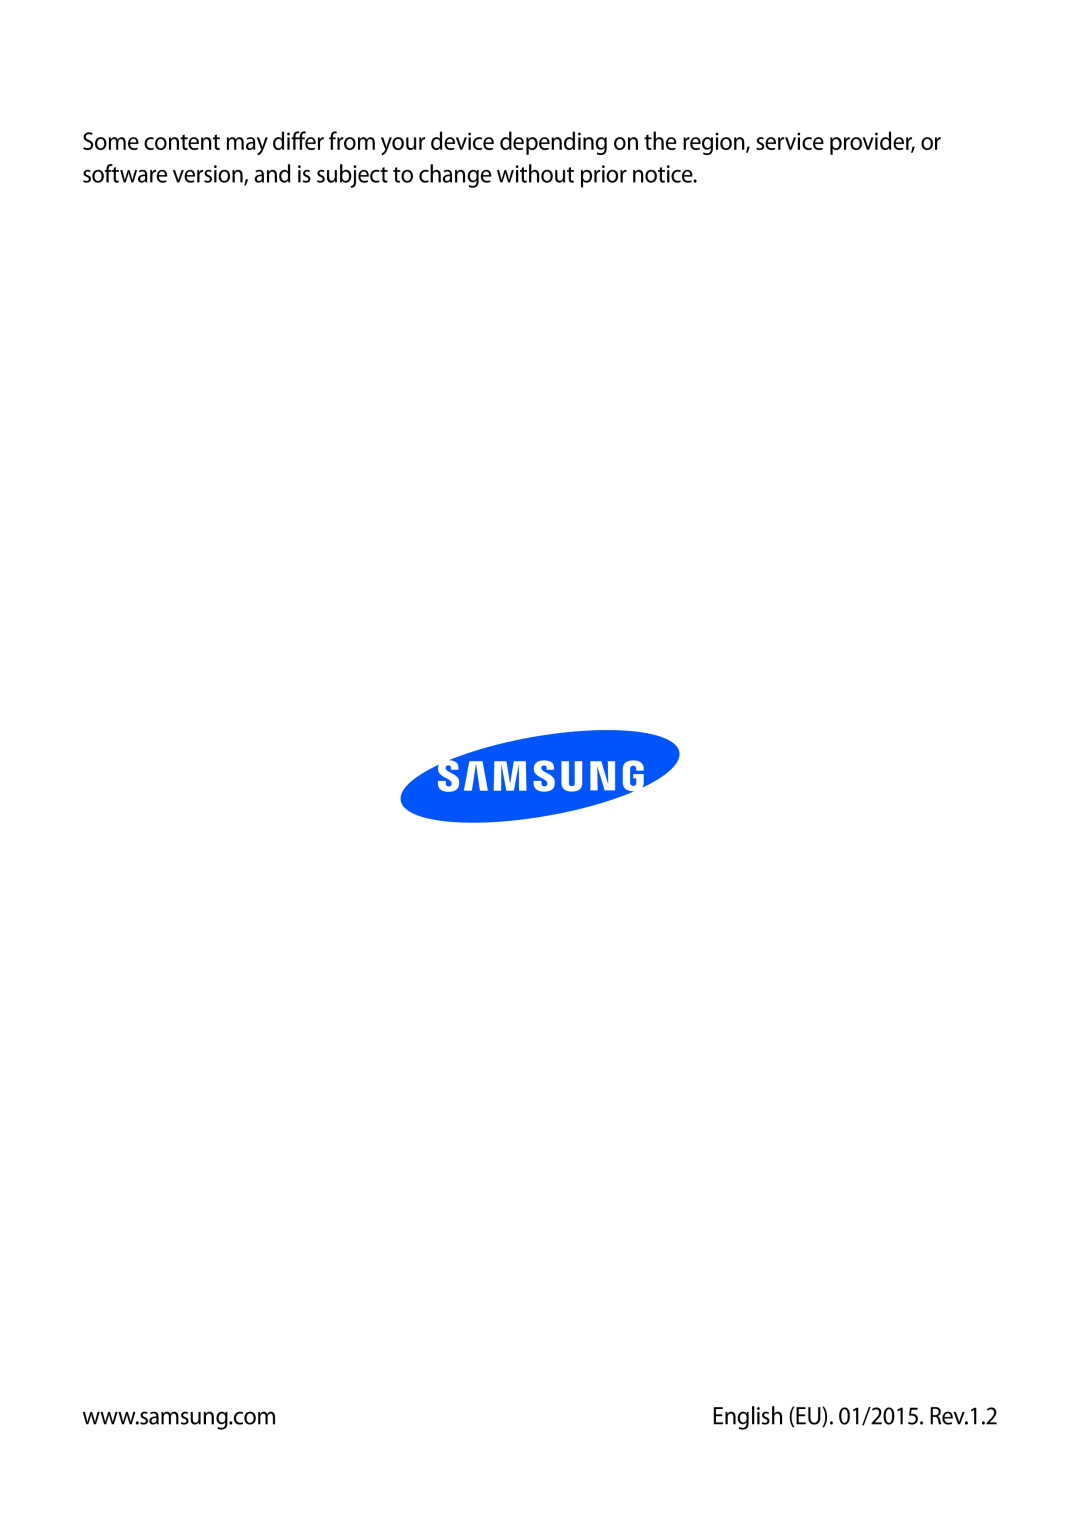 Samsung GT-I9195ZKIORX, GT-I9195ZKIATO, GT-I9195DKIDBT, GT-I9195ZWIDBT, GT-I9195ZWIVGR manual English EU. 01/2015. Rev.1.2 